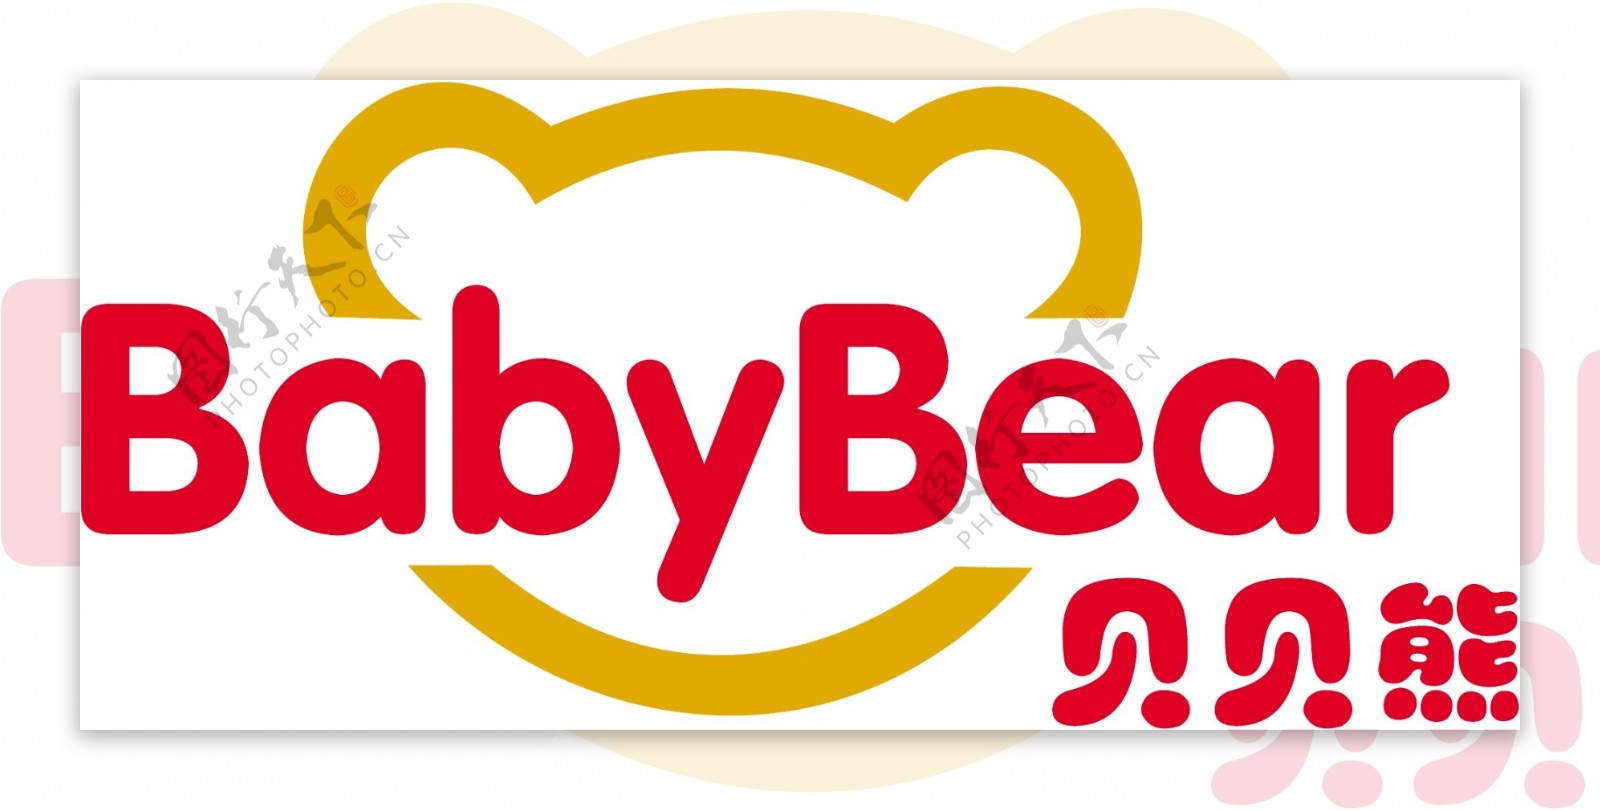 贝贝熊logo图片